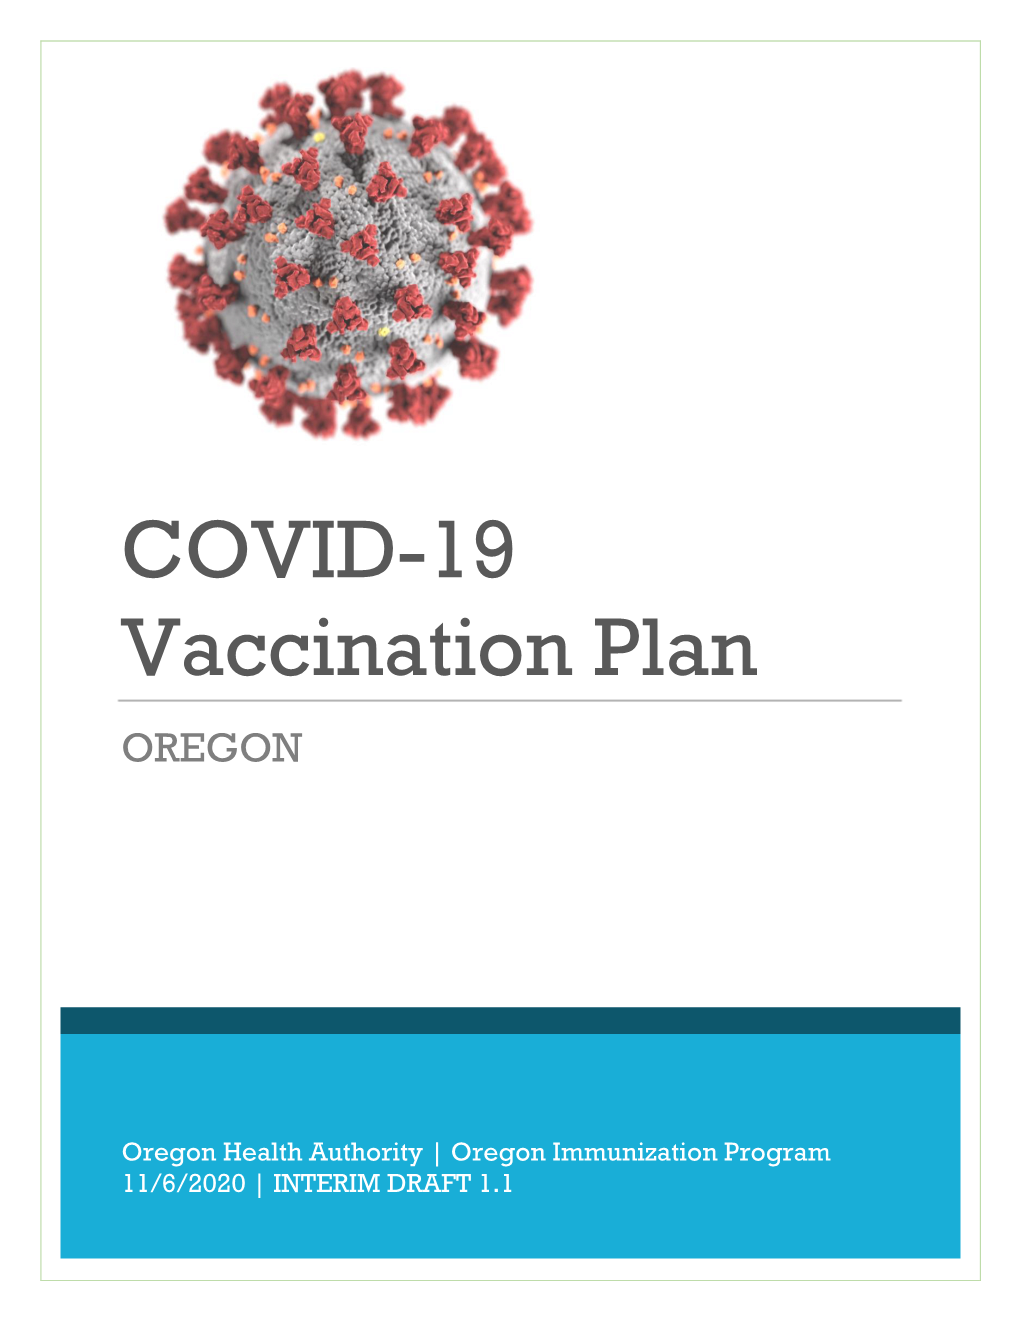 Oregon's COVID-19 Vaccination Plan